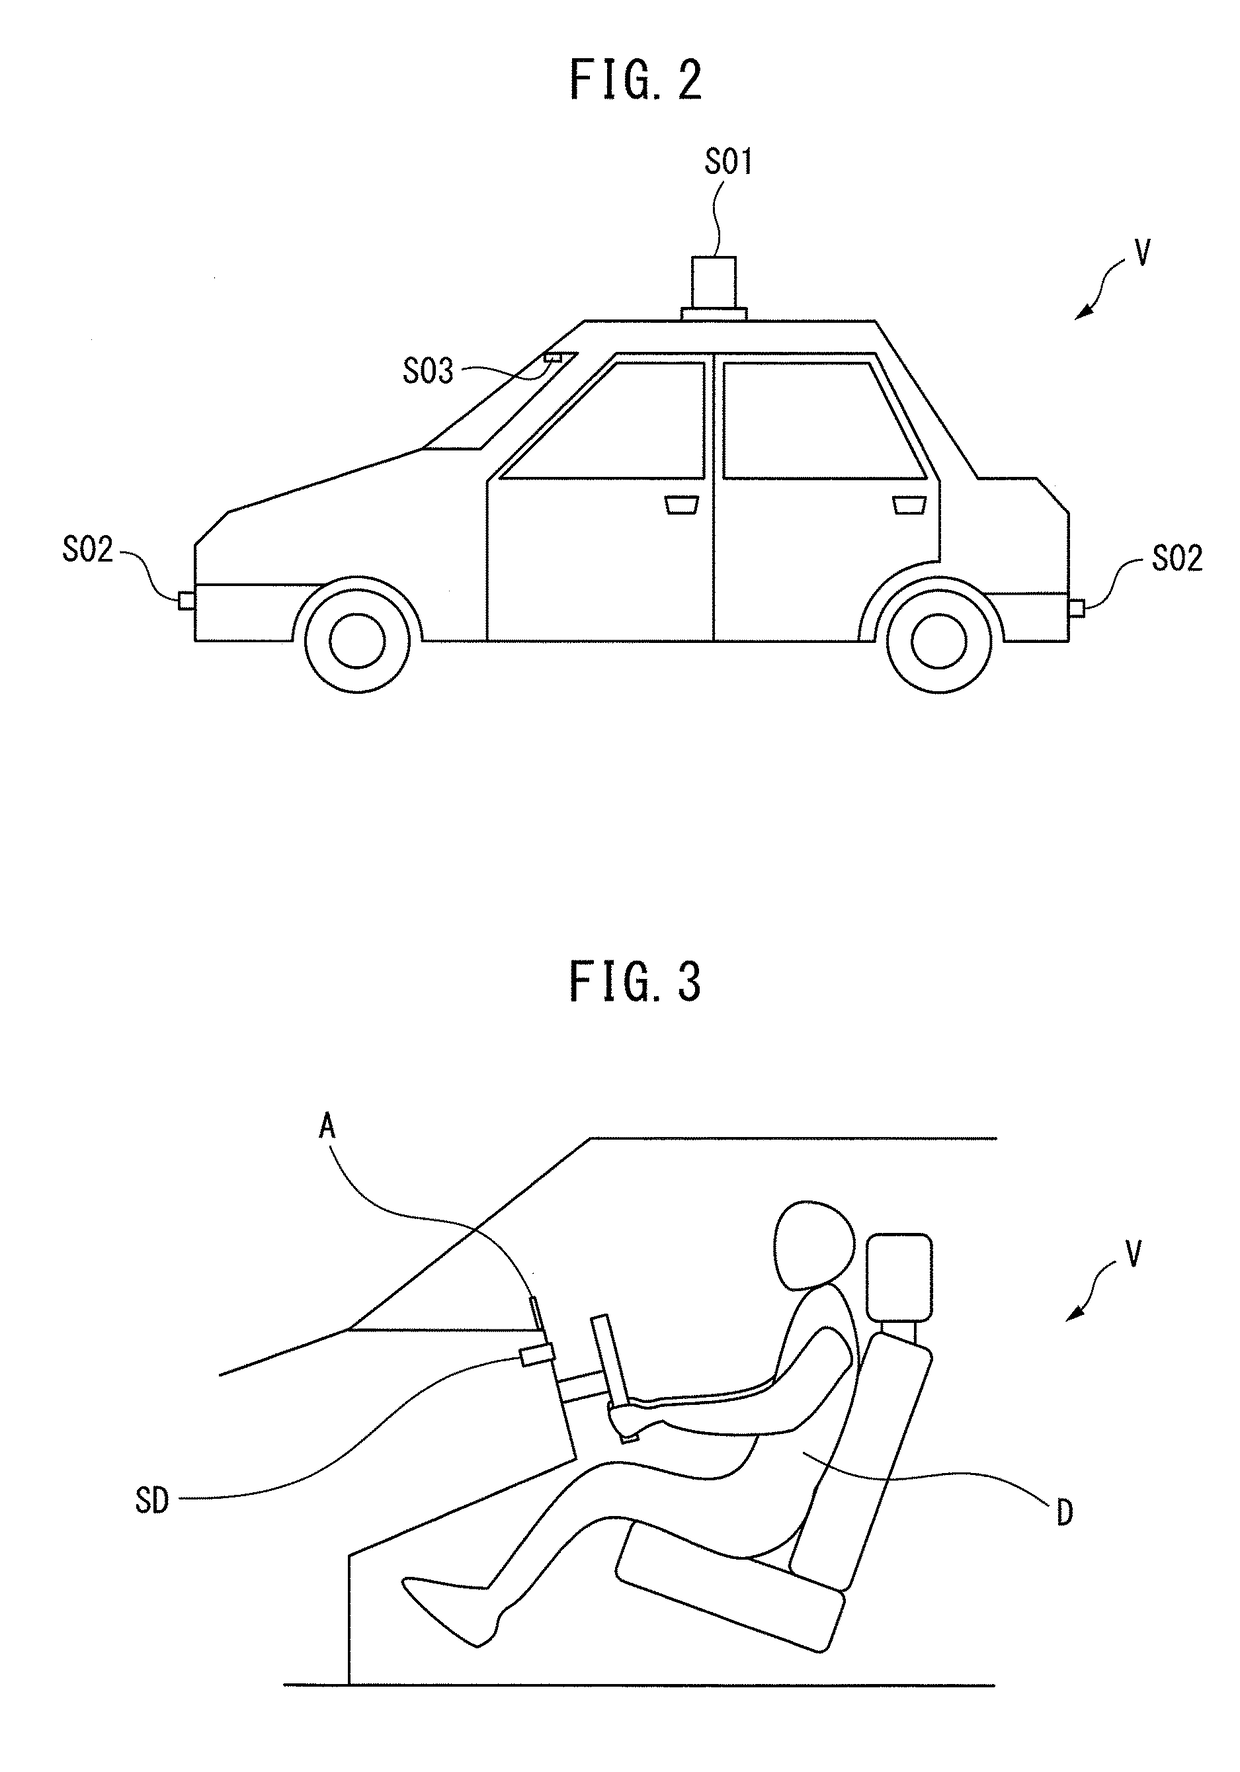 Autonomous driving control system for vehicle